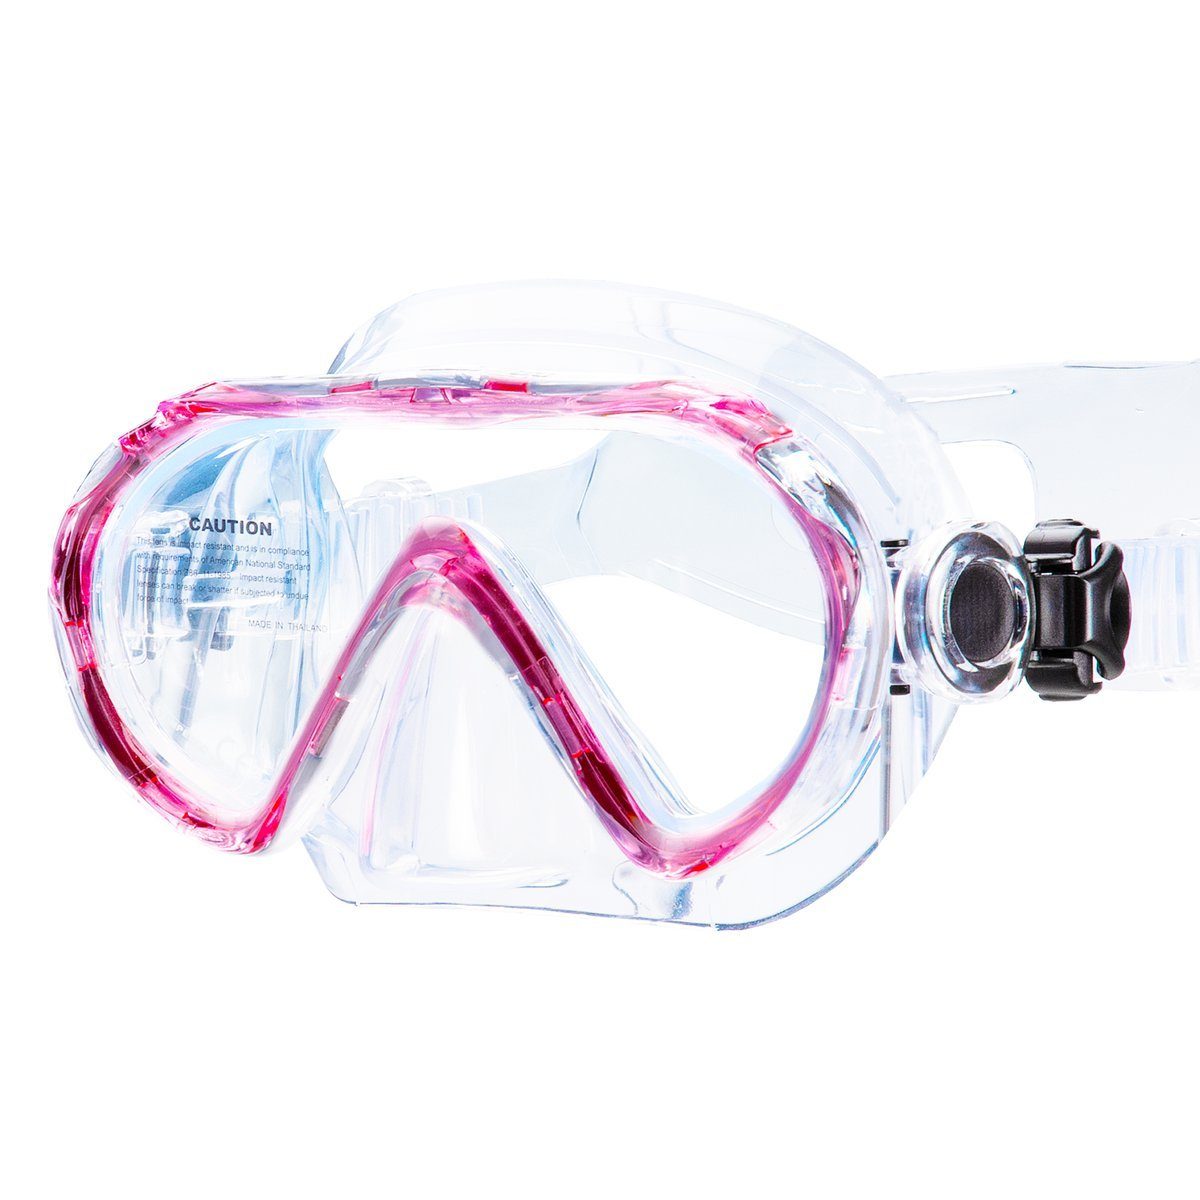 Kinder-Schwimmbrille pink blau mit Tasche Taucherbrille Anti-Fog antibeschlag 